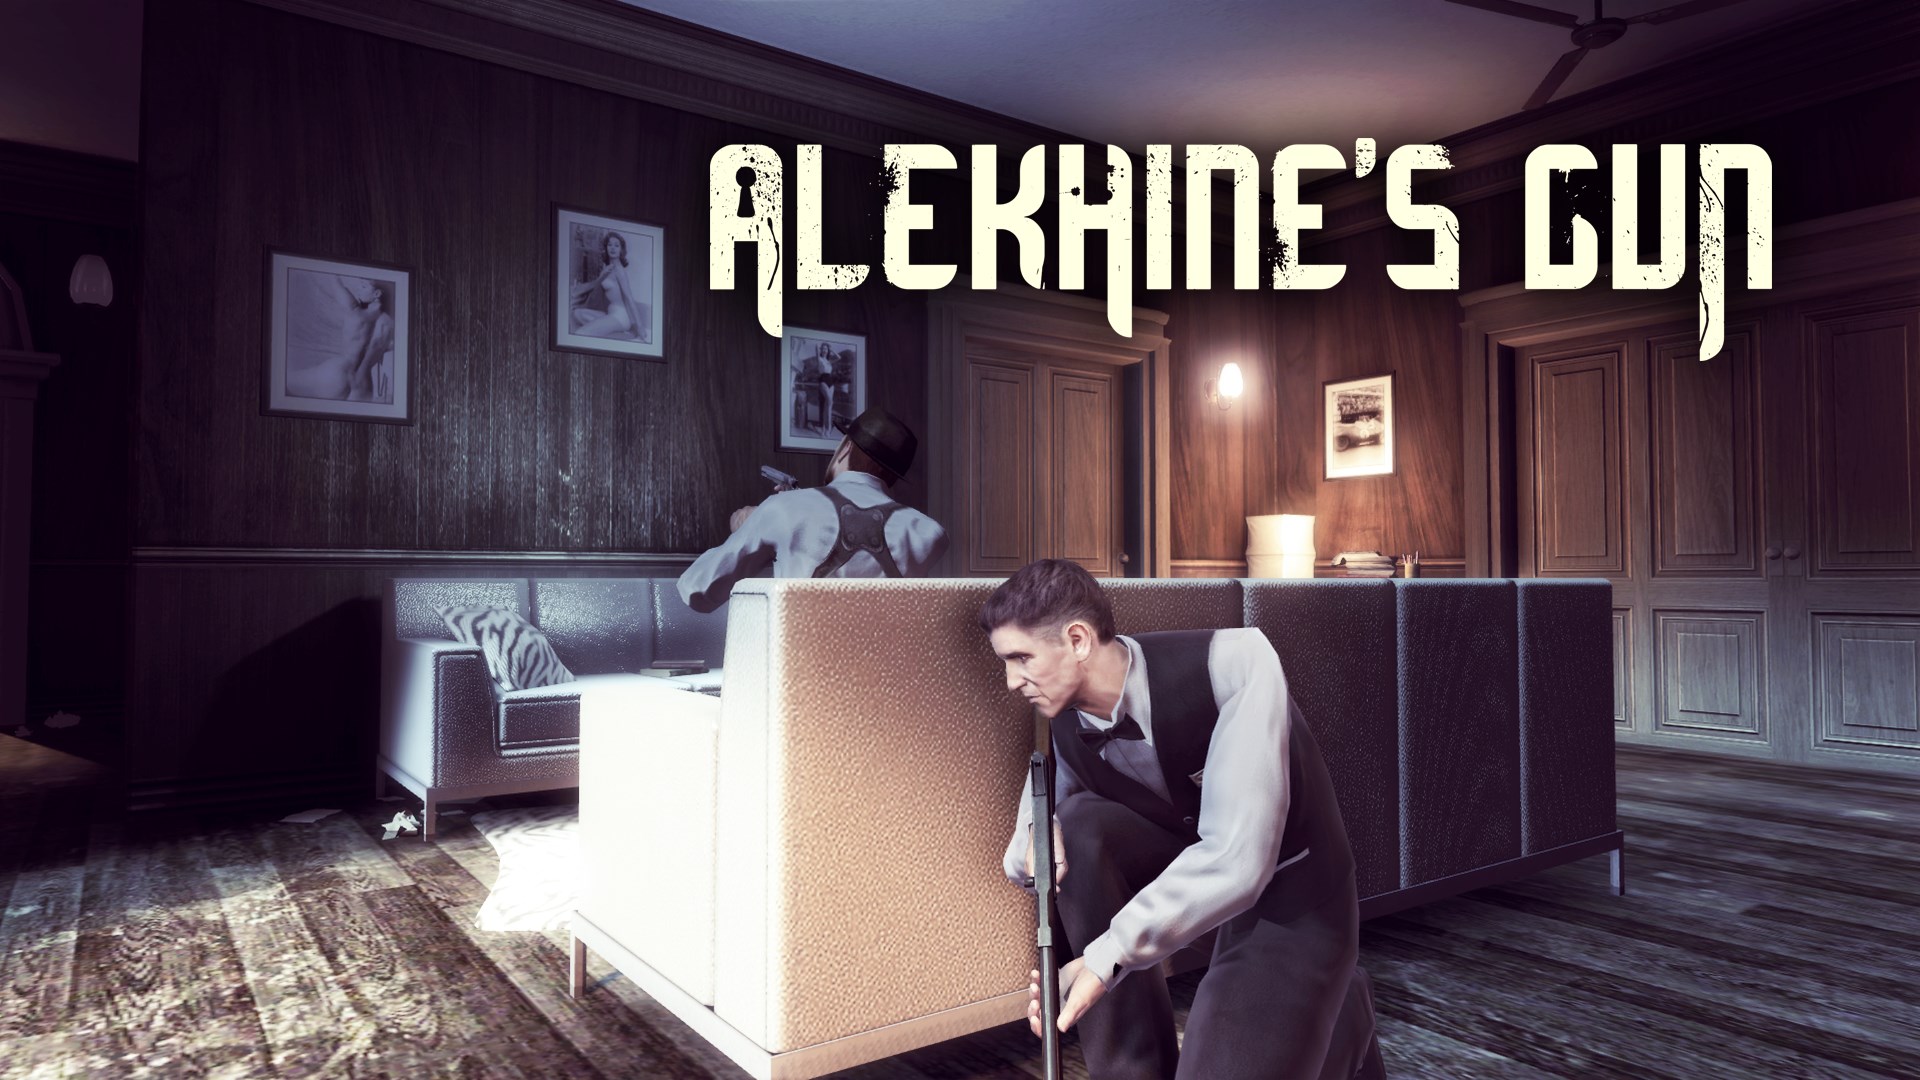 Alekhine s gun steam фото 94